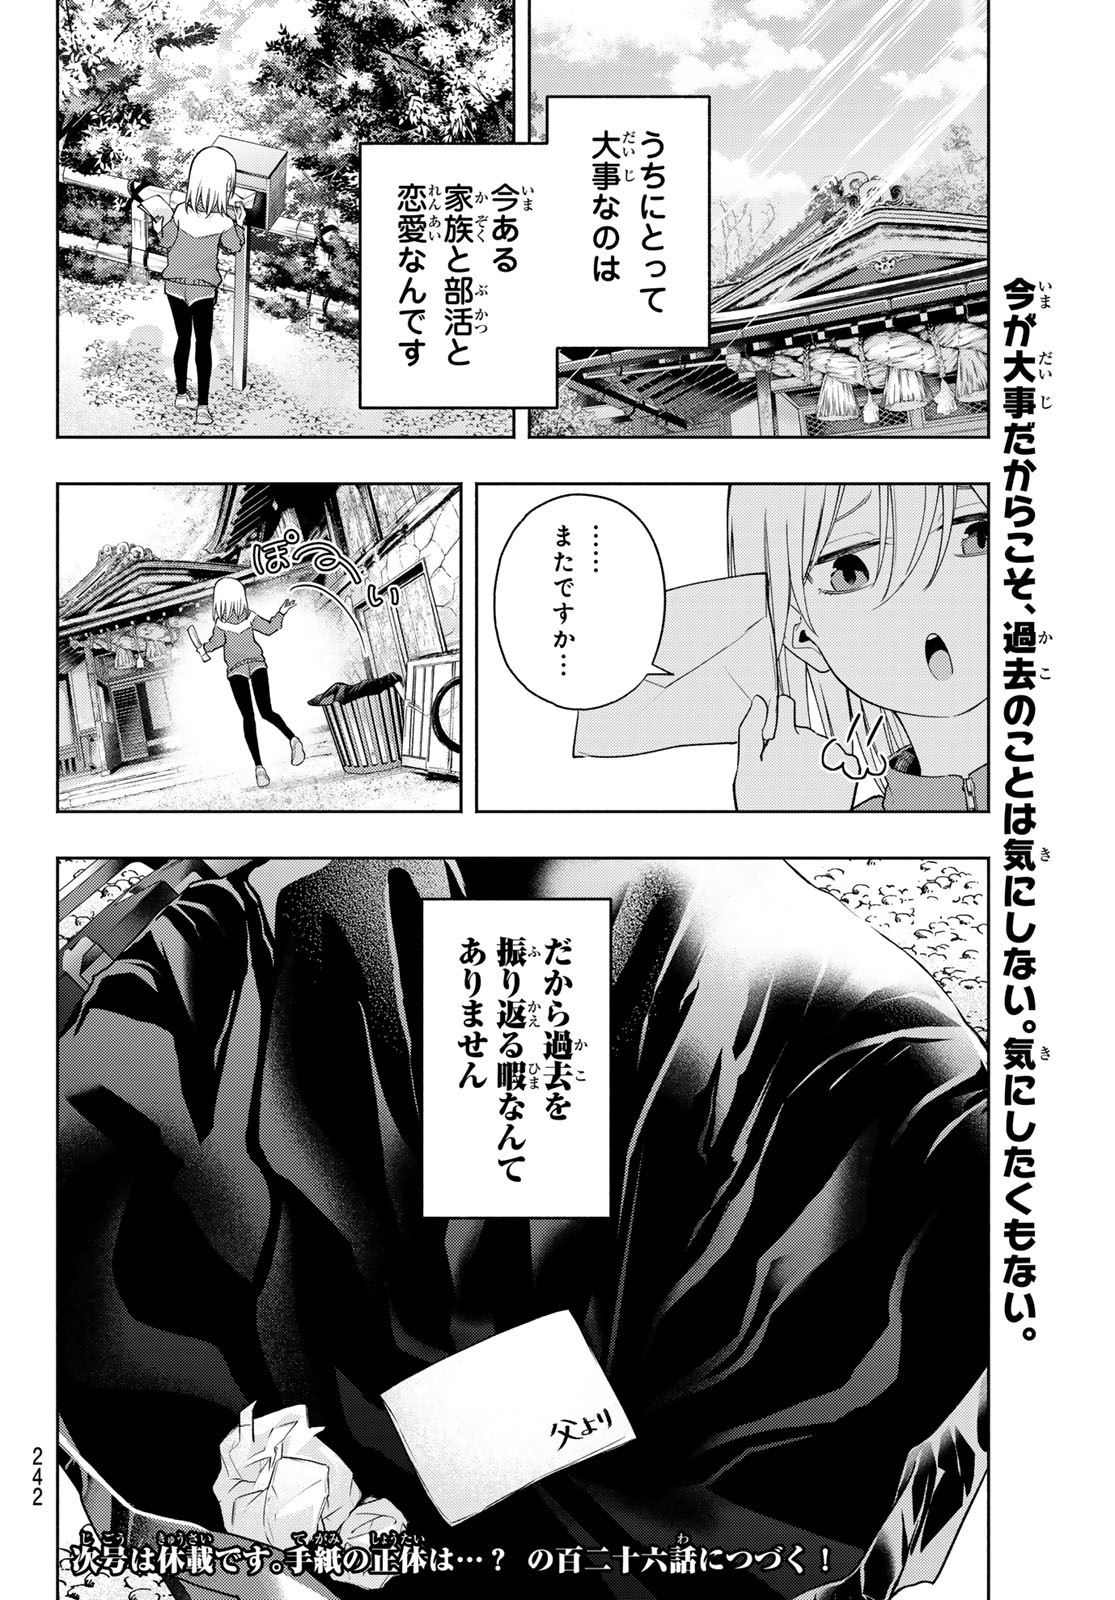 Amagami-san Chi no Enmusubi - Chapter 125 - Page 20